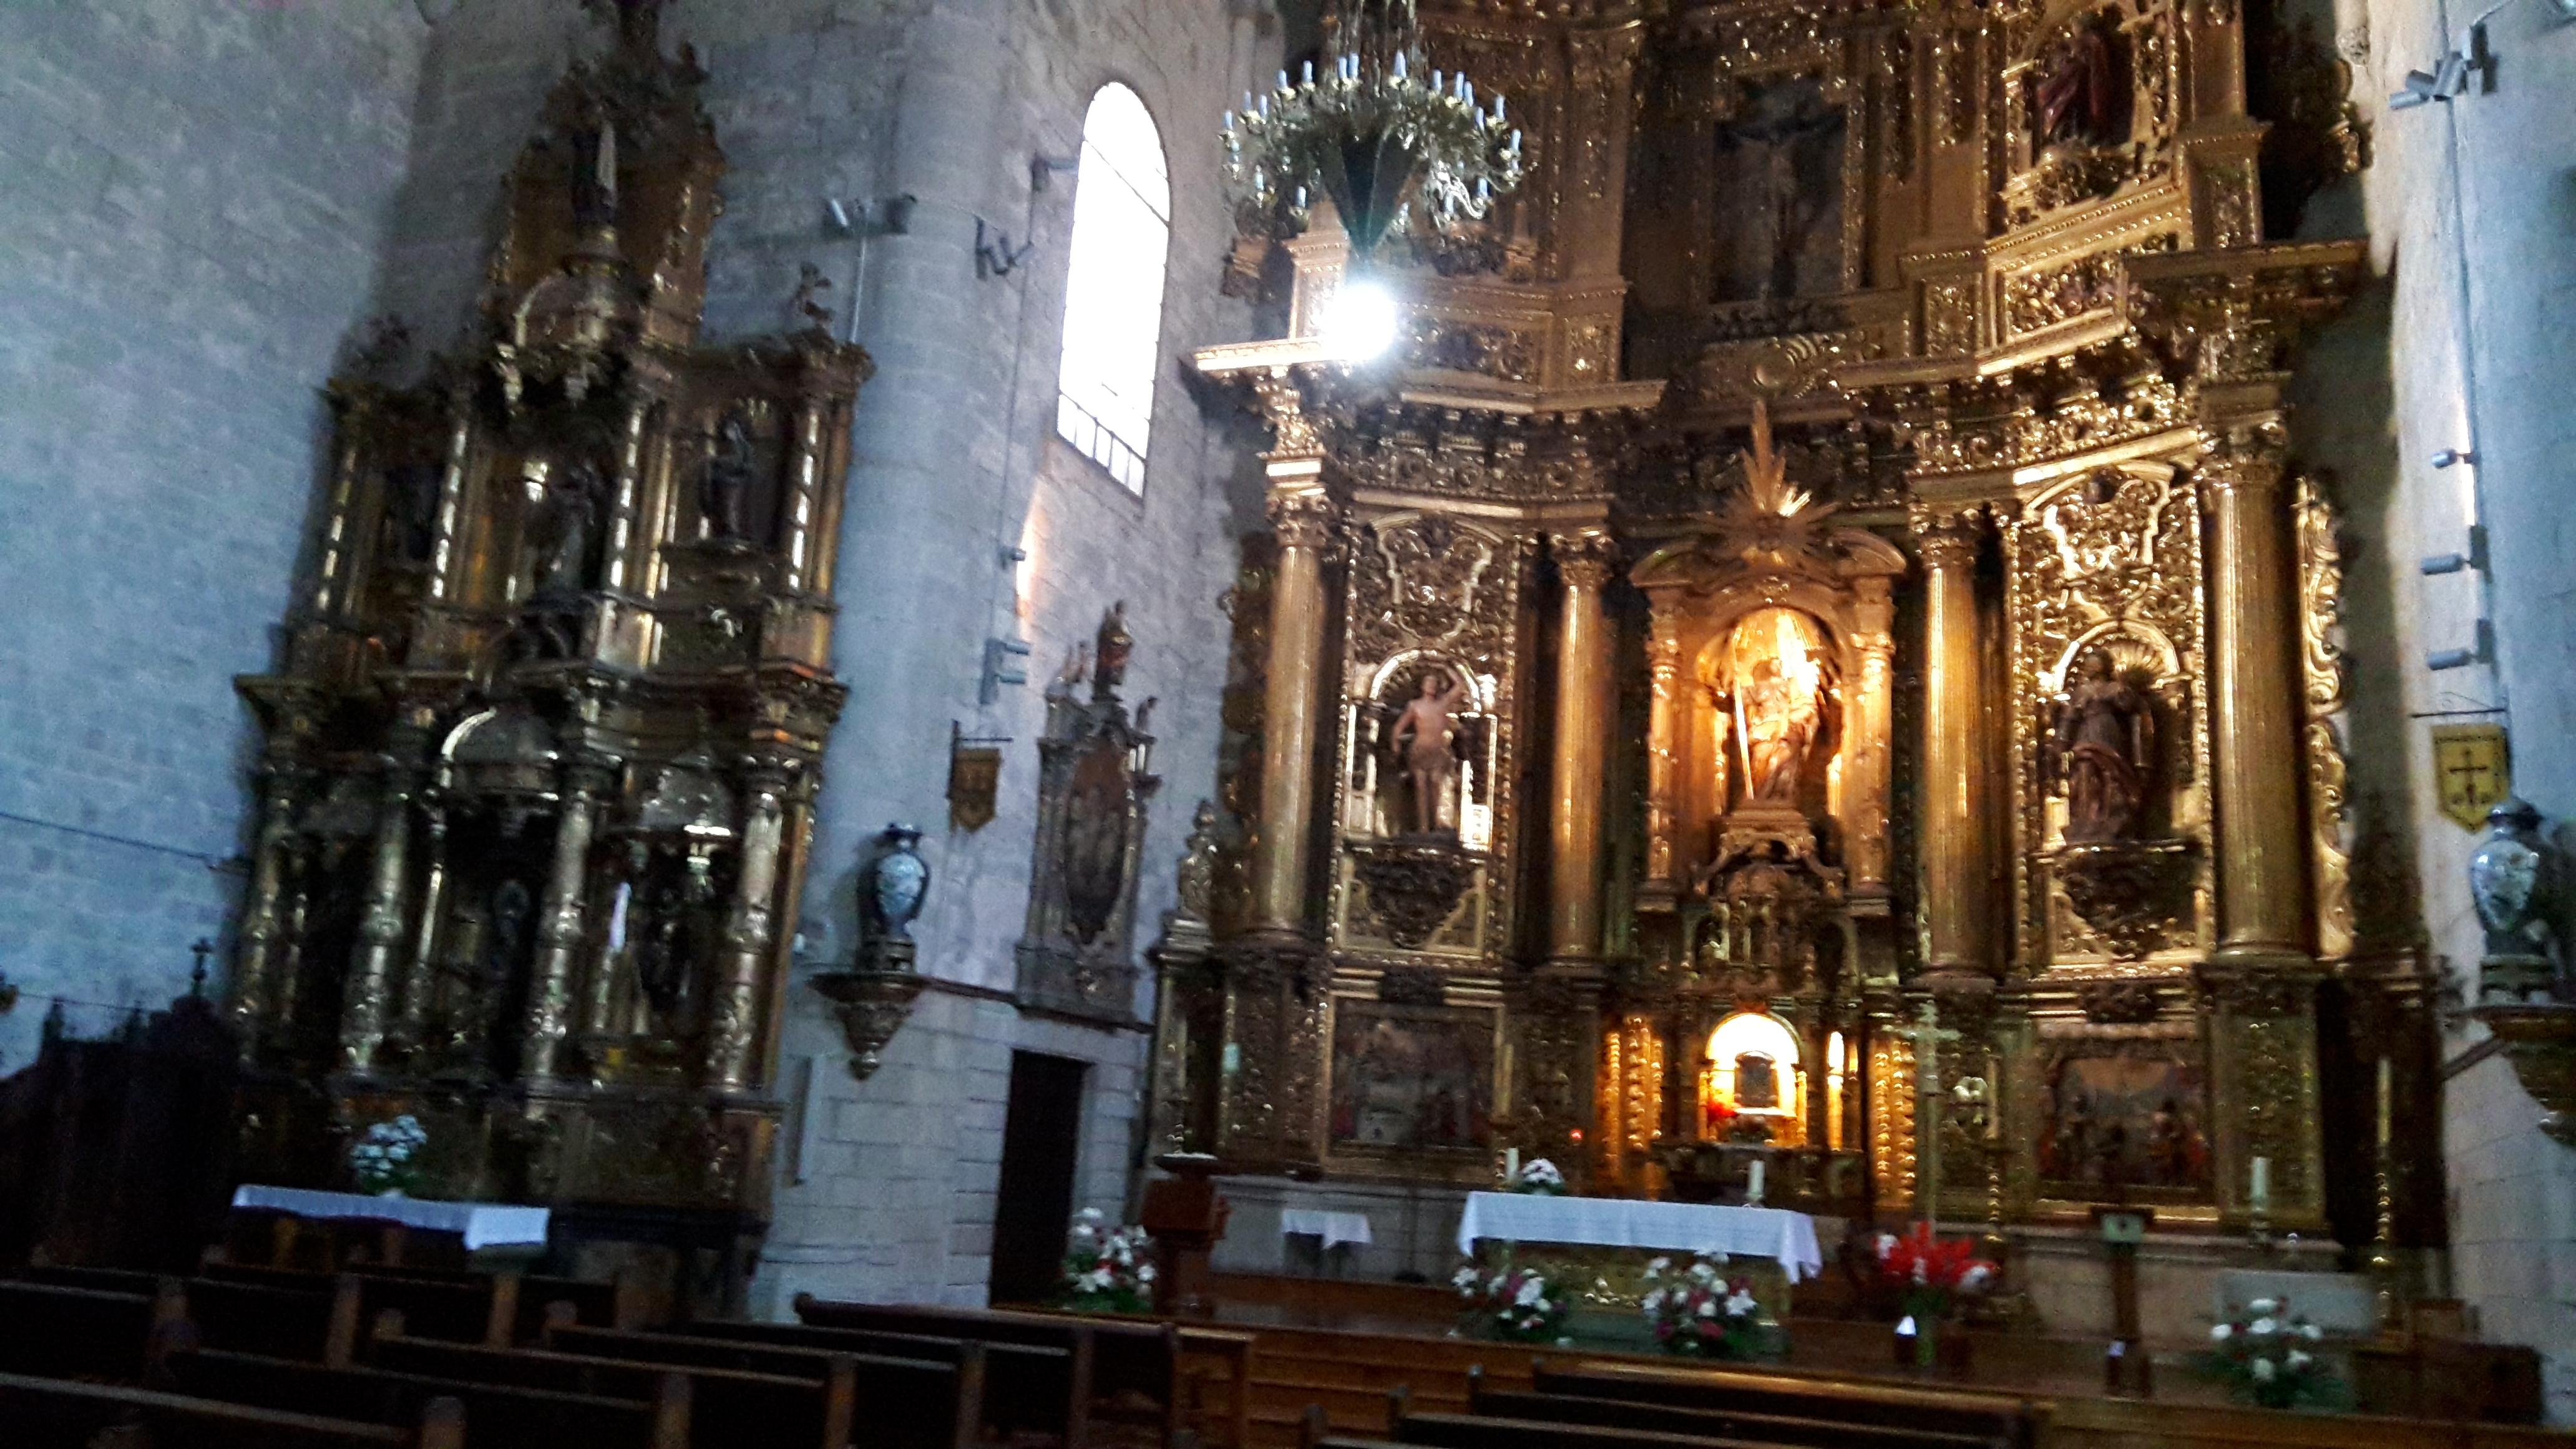 Puente la Reina templomának gyönyörű faragott oltára.